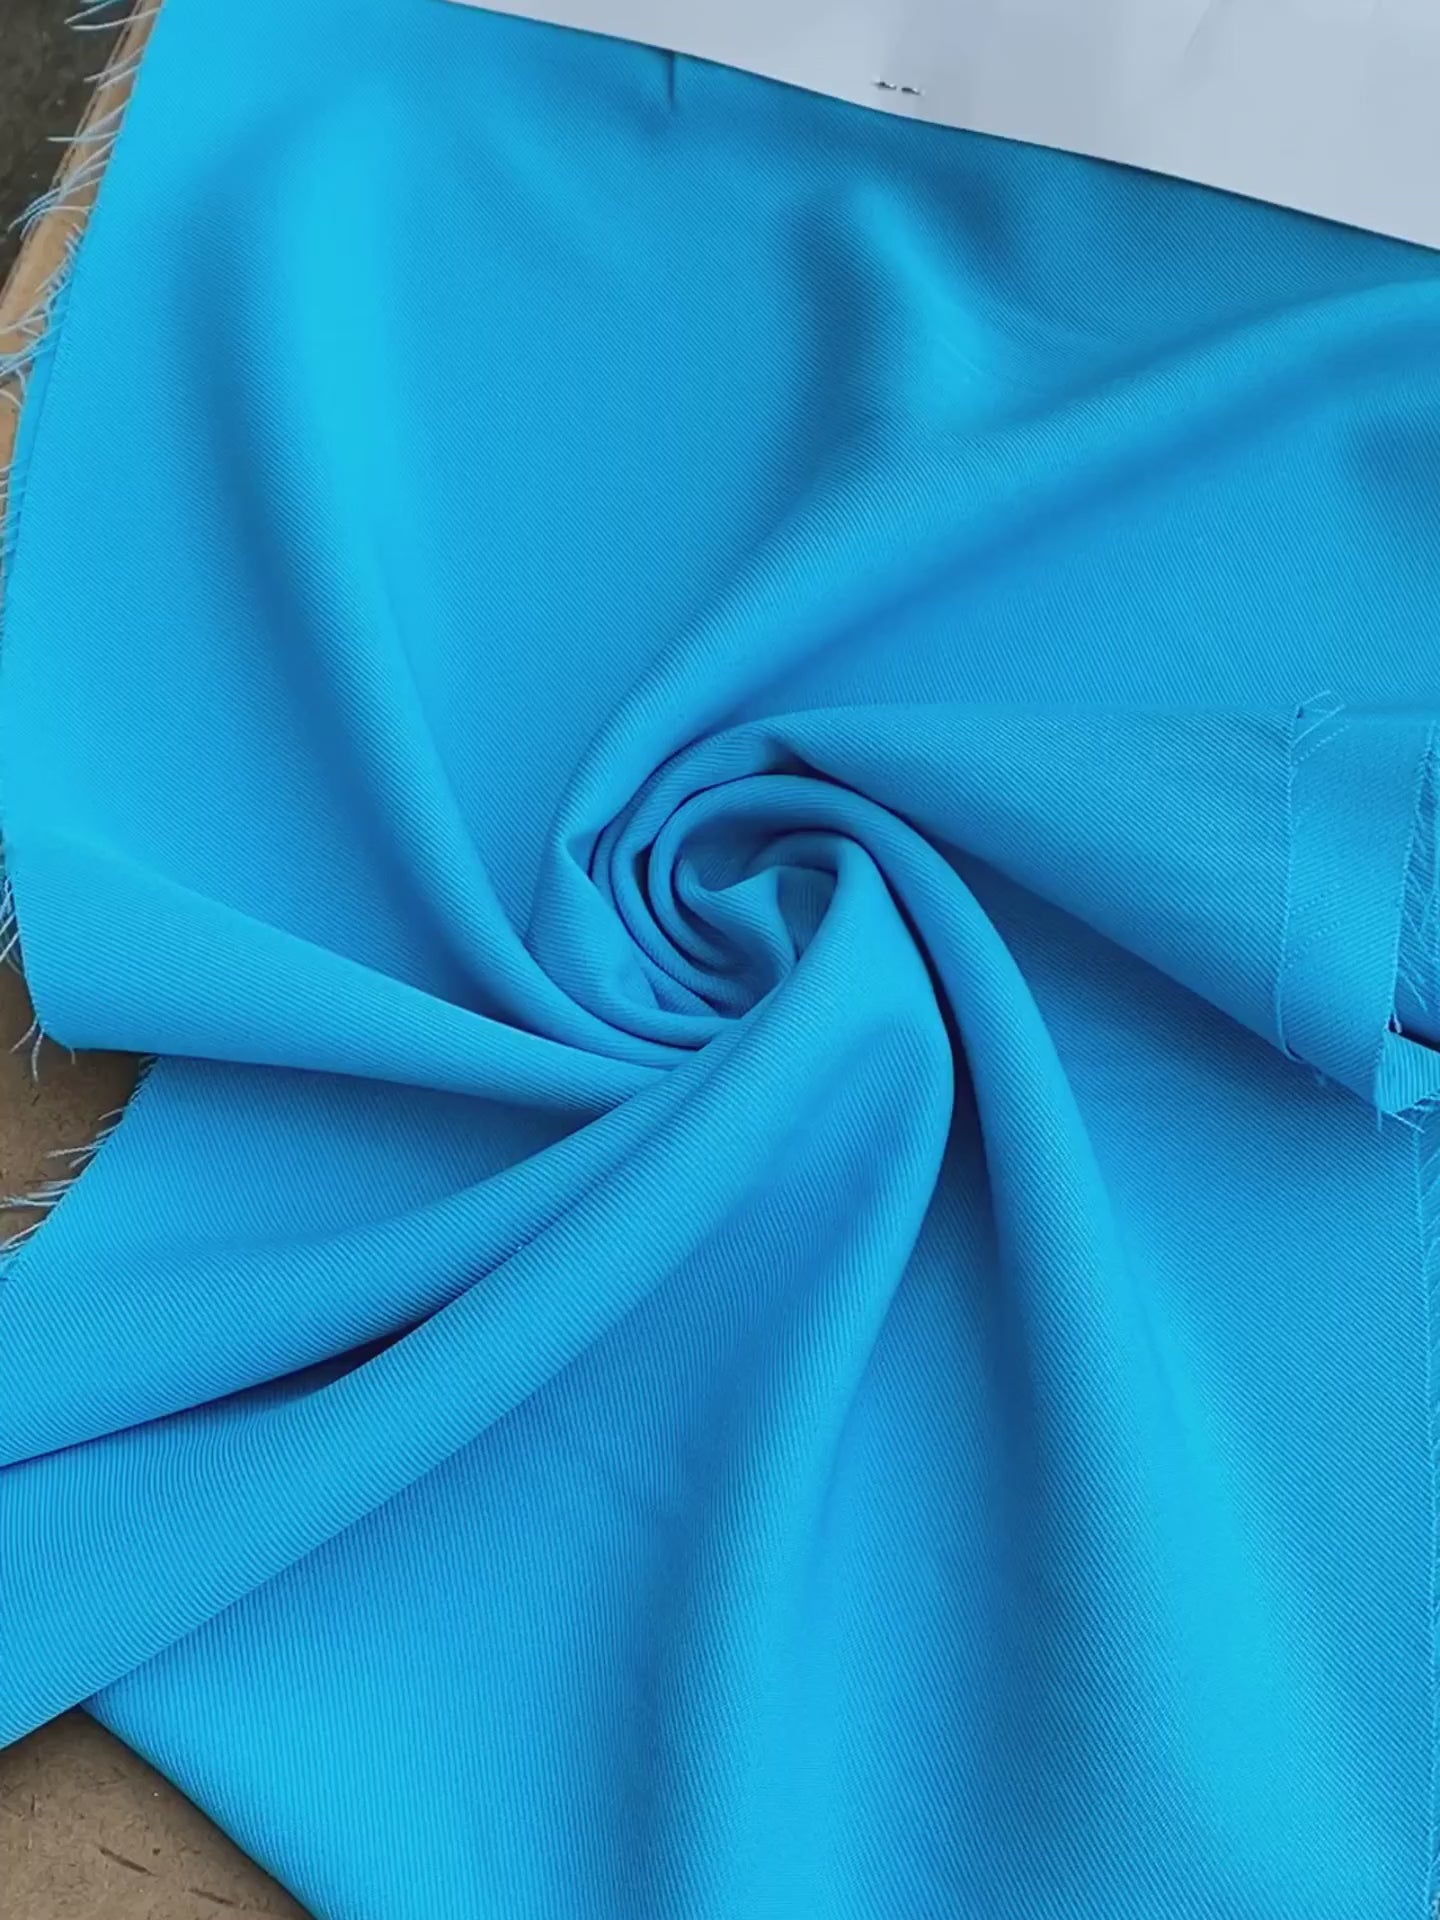 turquoise delaney gabardine, turquoise gabardine fabric, blue gabardine fabric, blue crepe and gabardine, royal bue gabardine fabric for pants, teal blue gabardine fabric for suit, blue gabardine and crepe, turquoise gabardine fabric for gown